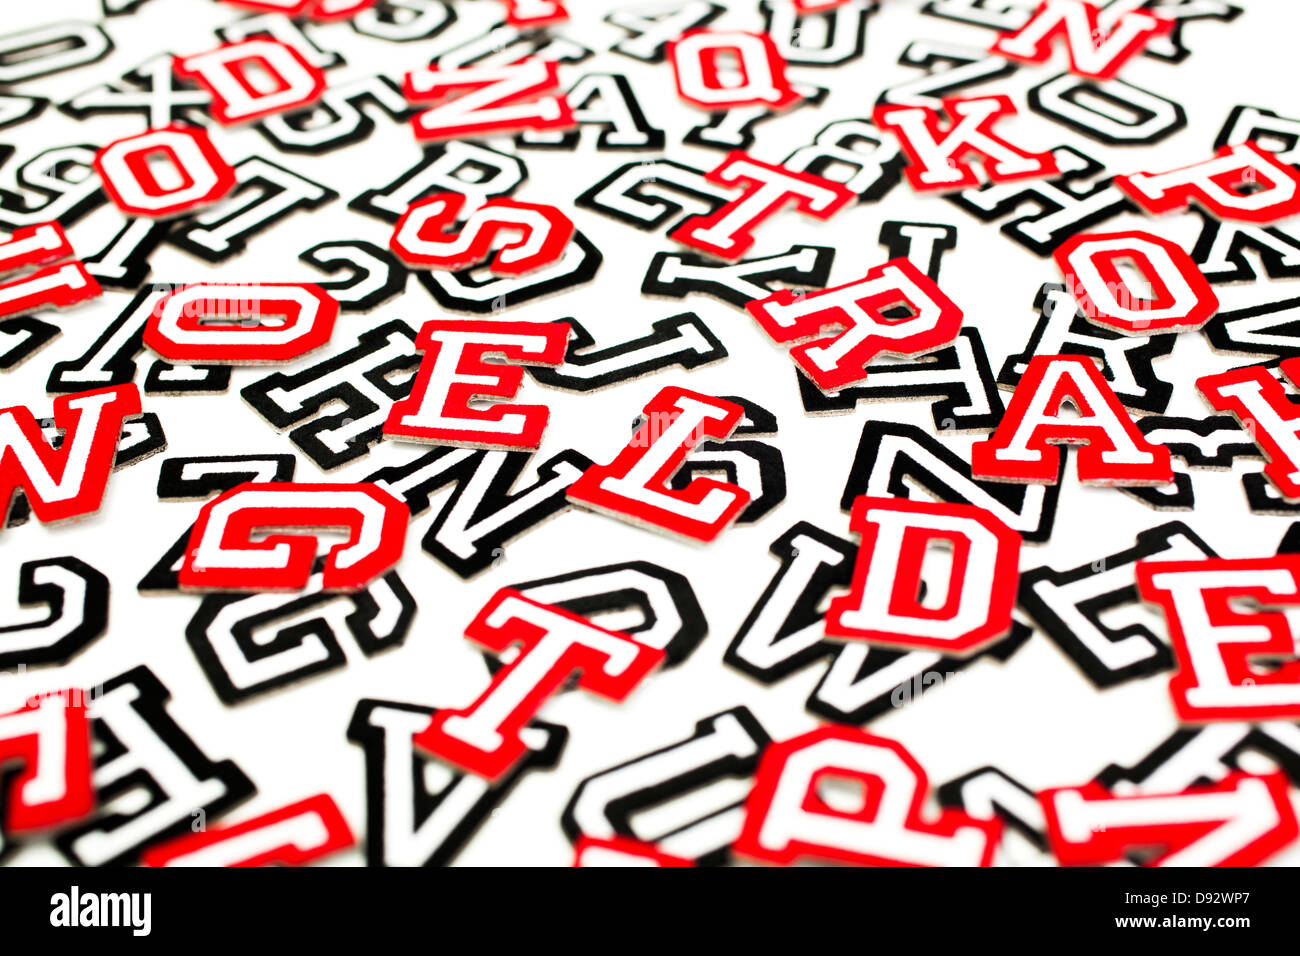 Eine Reihe von Varsity Schrift Aufkleber Buchstaben und Zahlen in rot und schwarz Gliederung Stockfoto